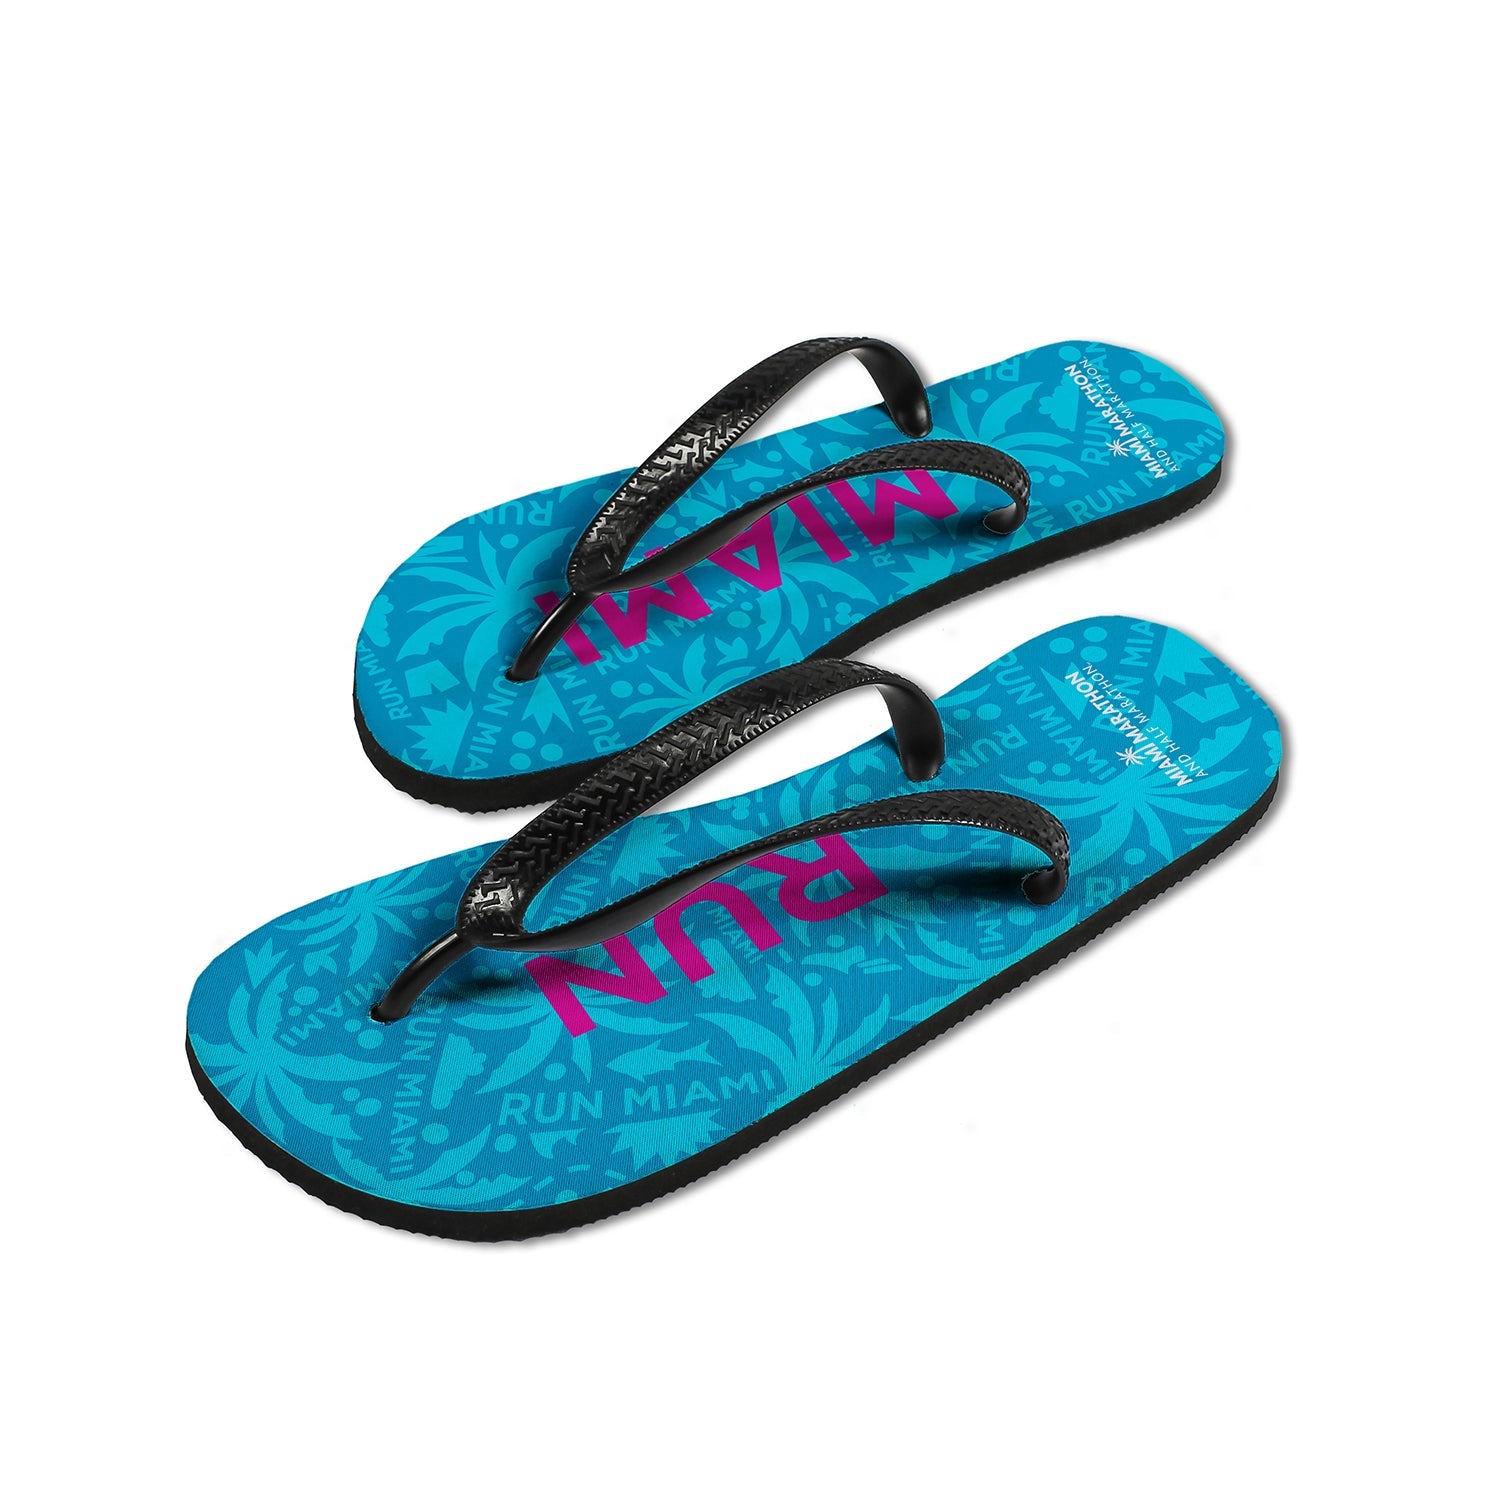 Sublimated Flip-Flops - Sapphire 'RUN MIAMI' Design